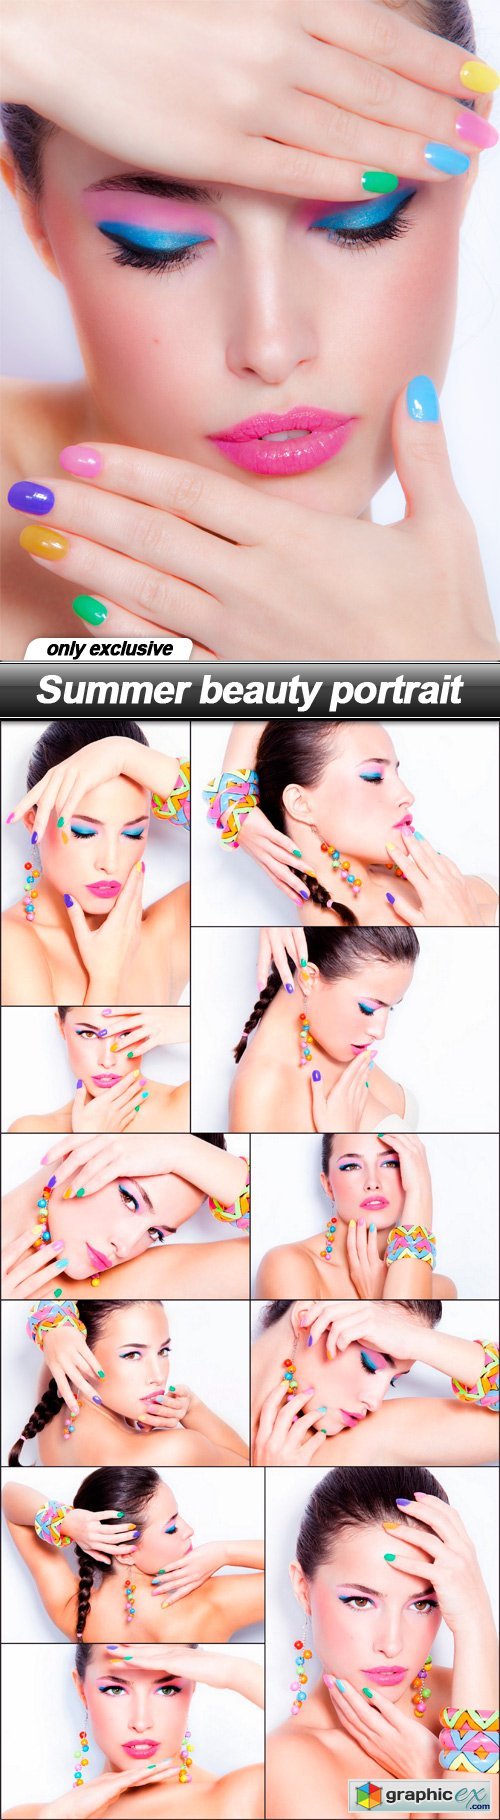 Summer beauty portrait - 12 UHQ JPEG